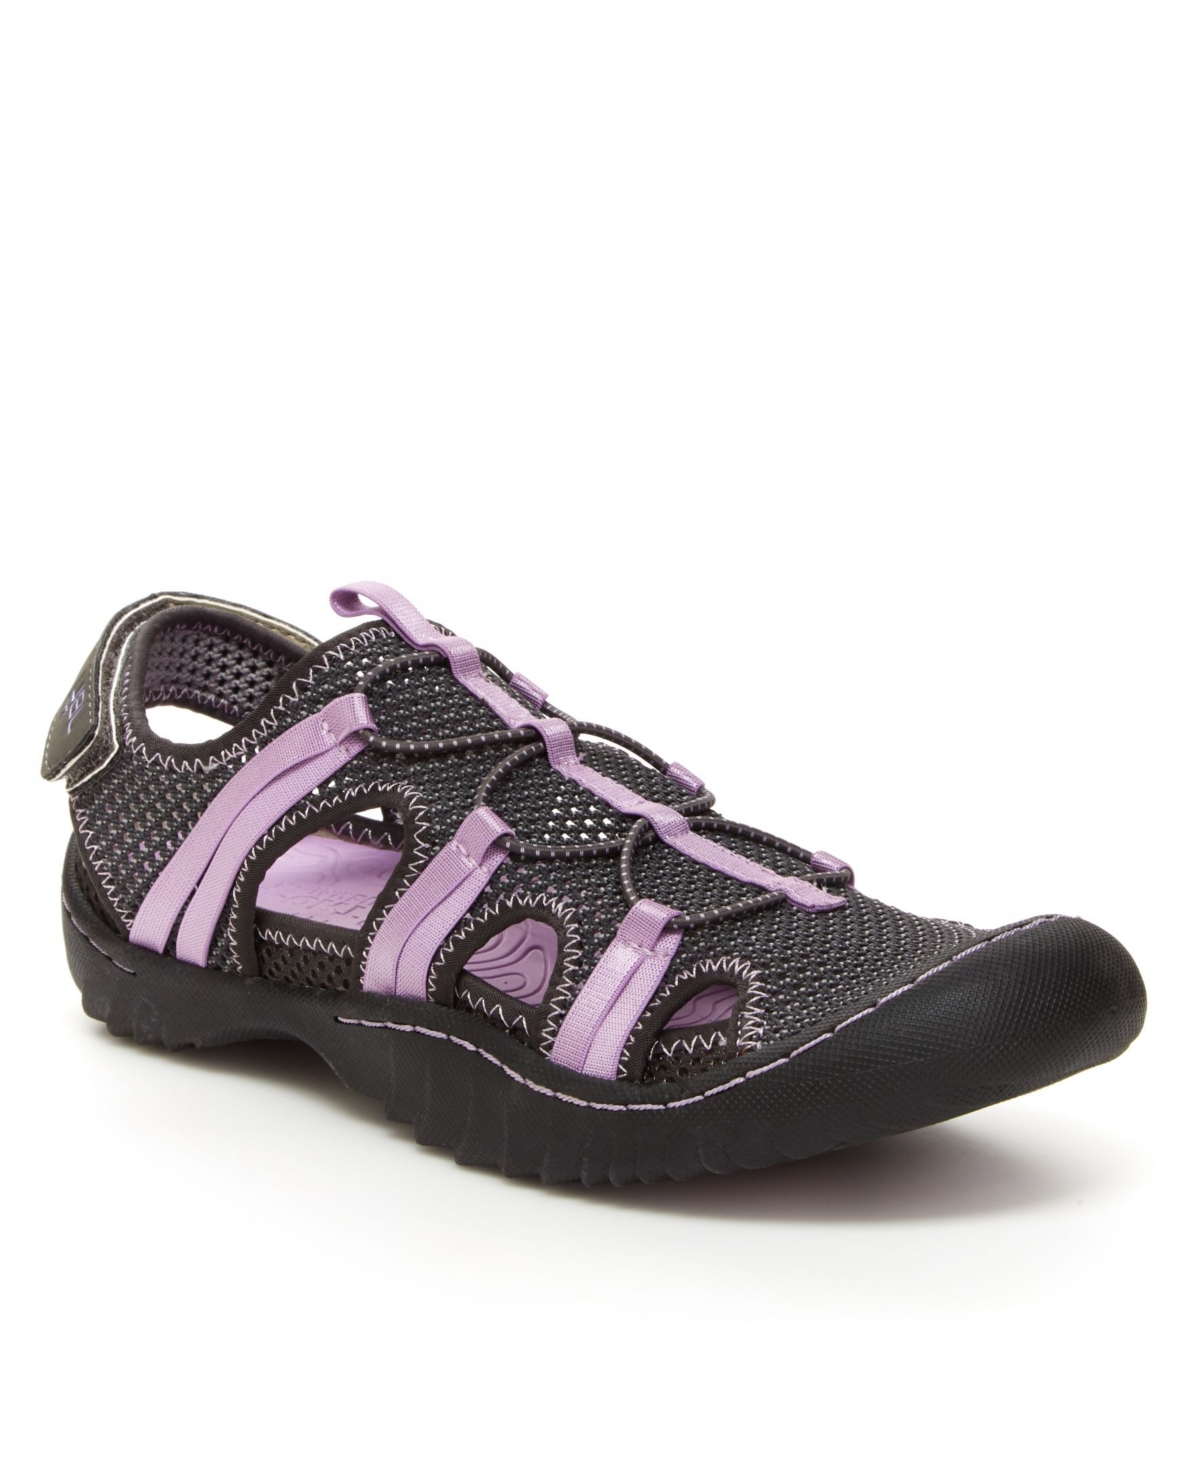 Jbu Sport Thunder Women's Outdoor Casual Slip On Sandal Women's Shoes